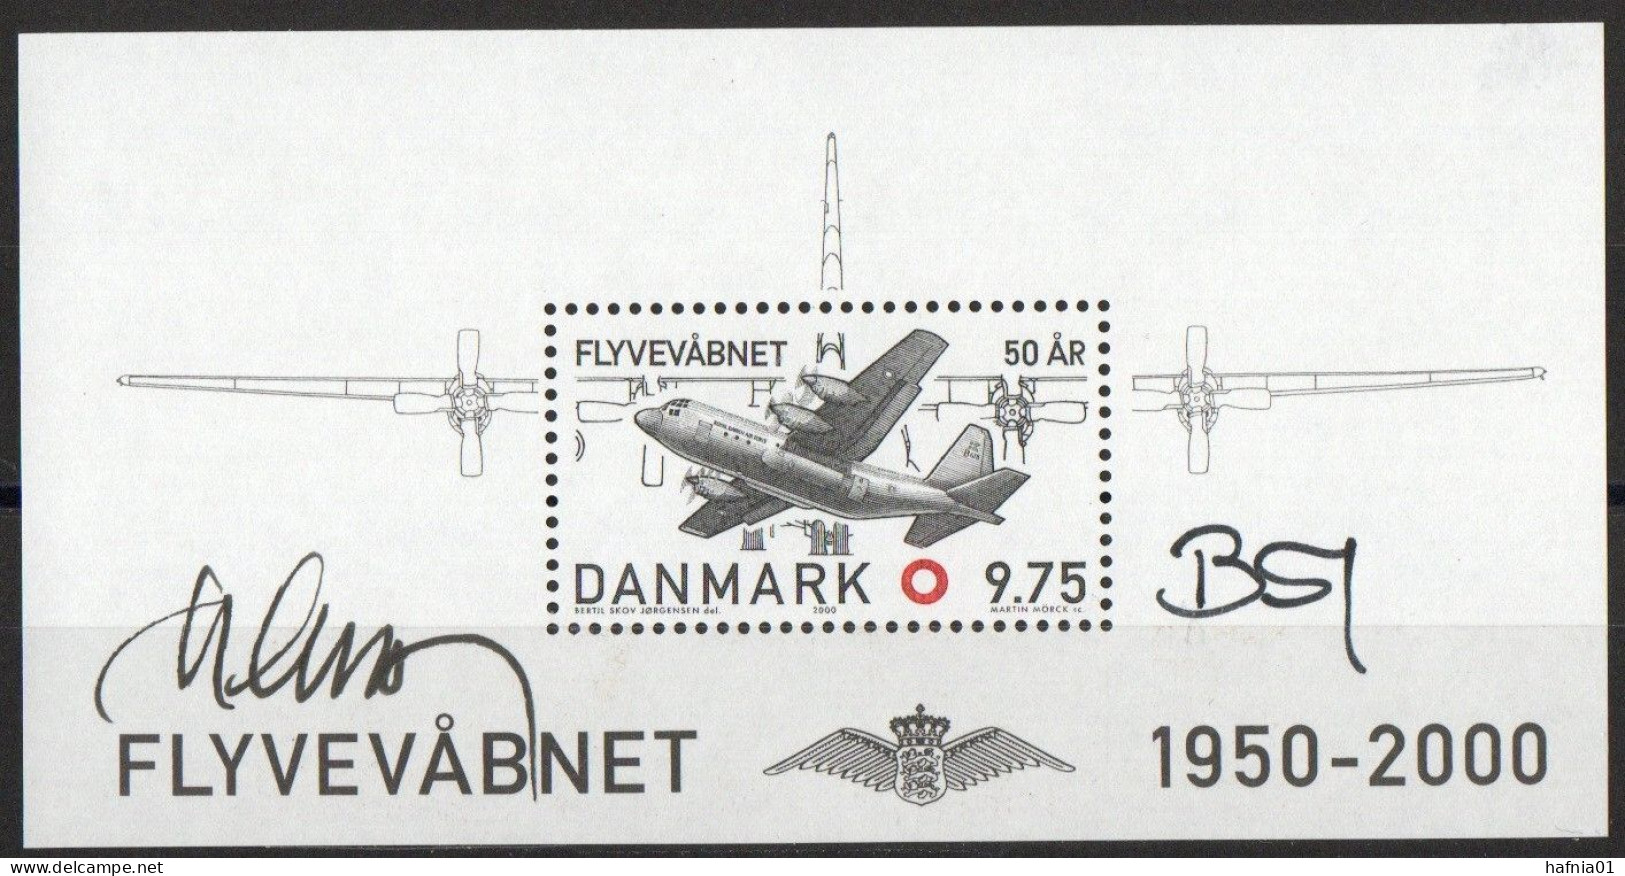 Martin Mörck/Bertil Skov Jørgensen. Denmark 2000. 50 Anniv Air Force. Michel Bl.15 MNH. Signed. - Blocs-feuillets